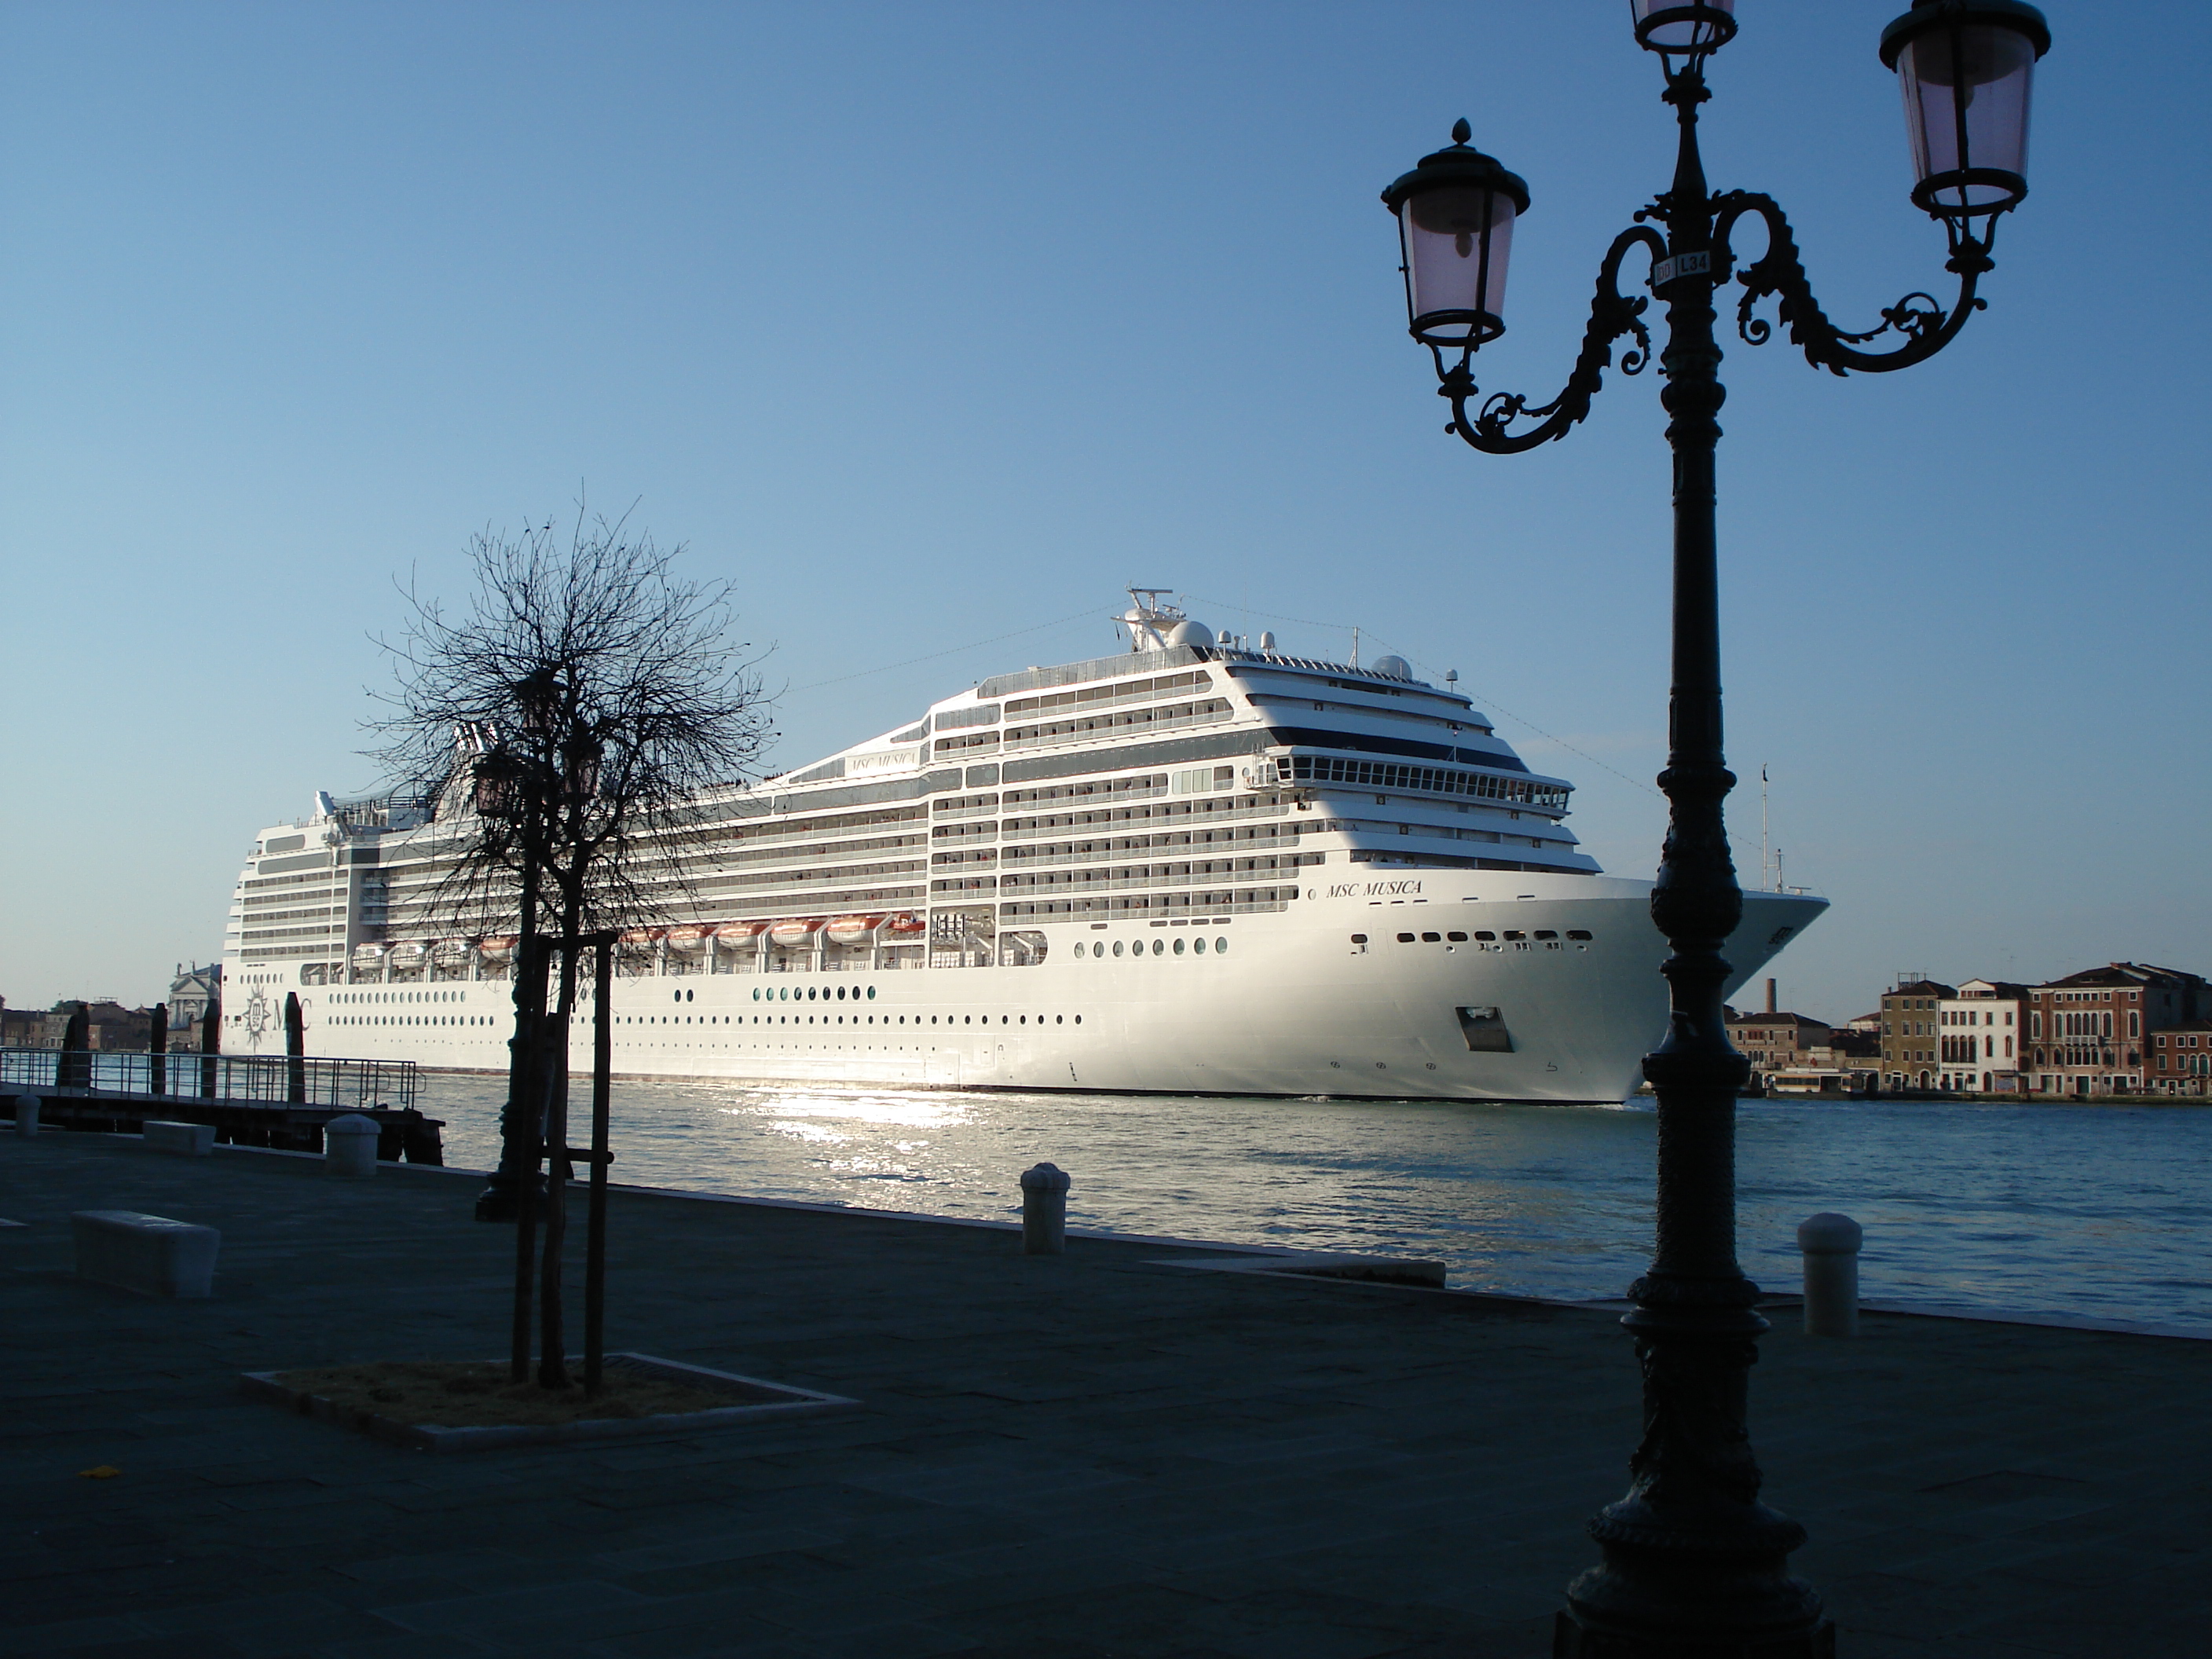 Cruises: ensuring smooth sailing